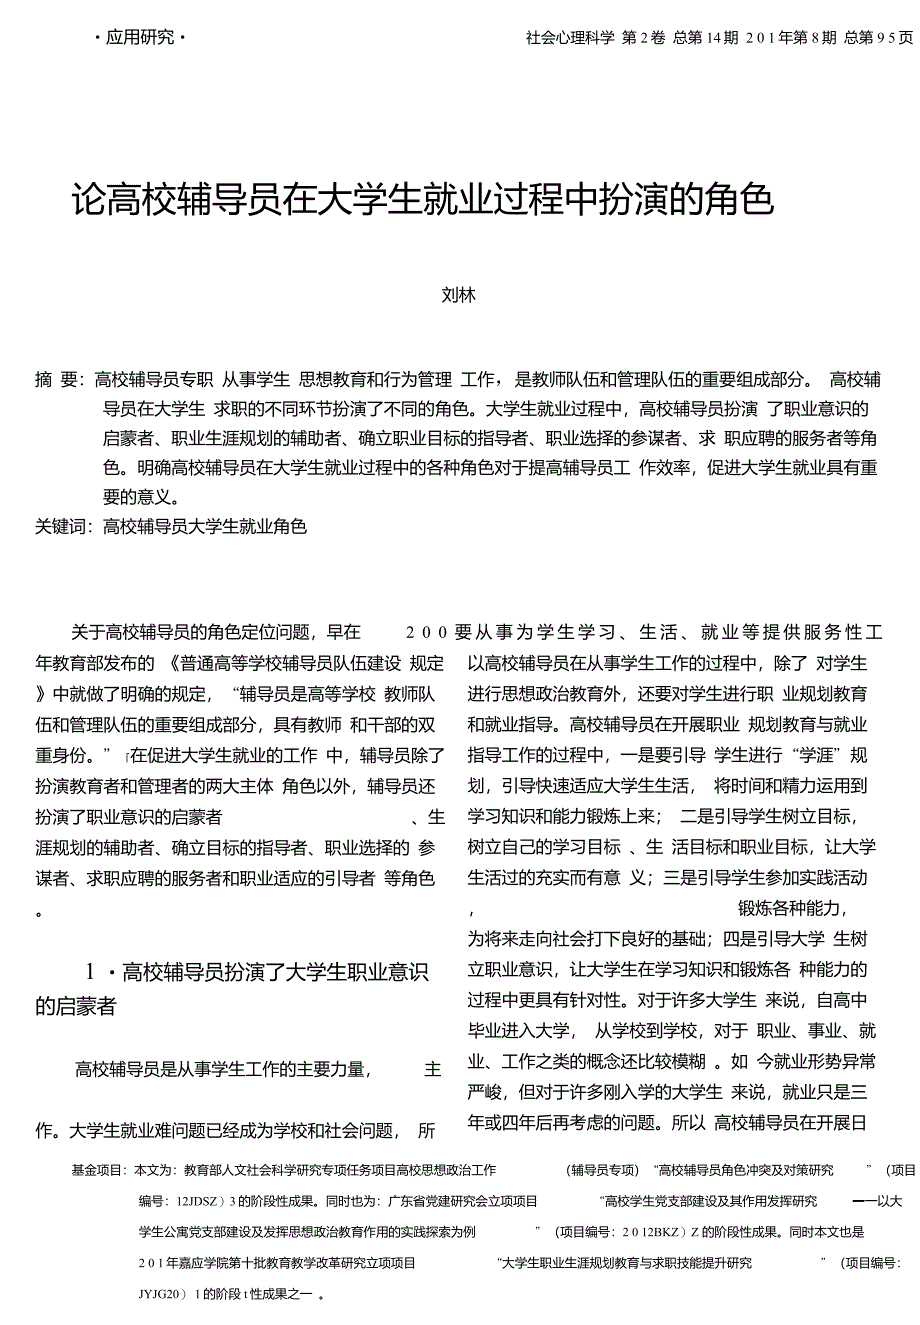 论高校辅导员在大学生就业过程中扮演的角色_刘林_第1页